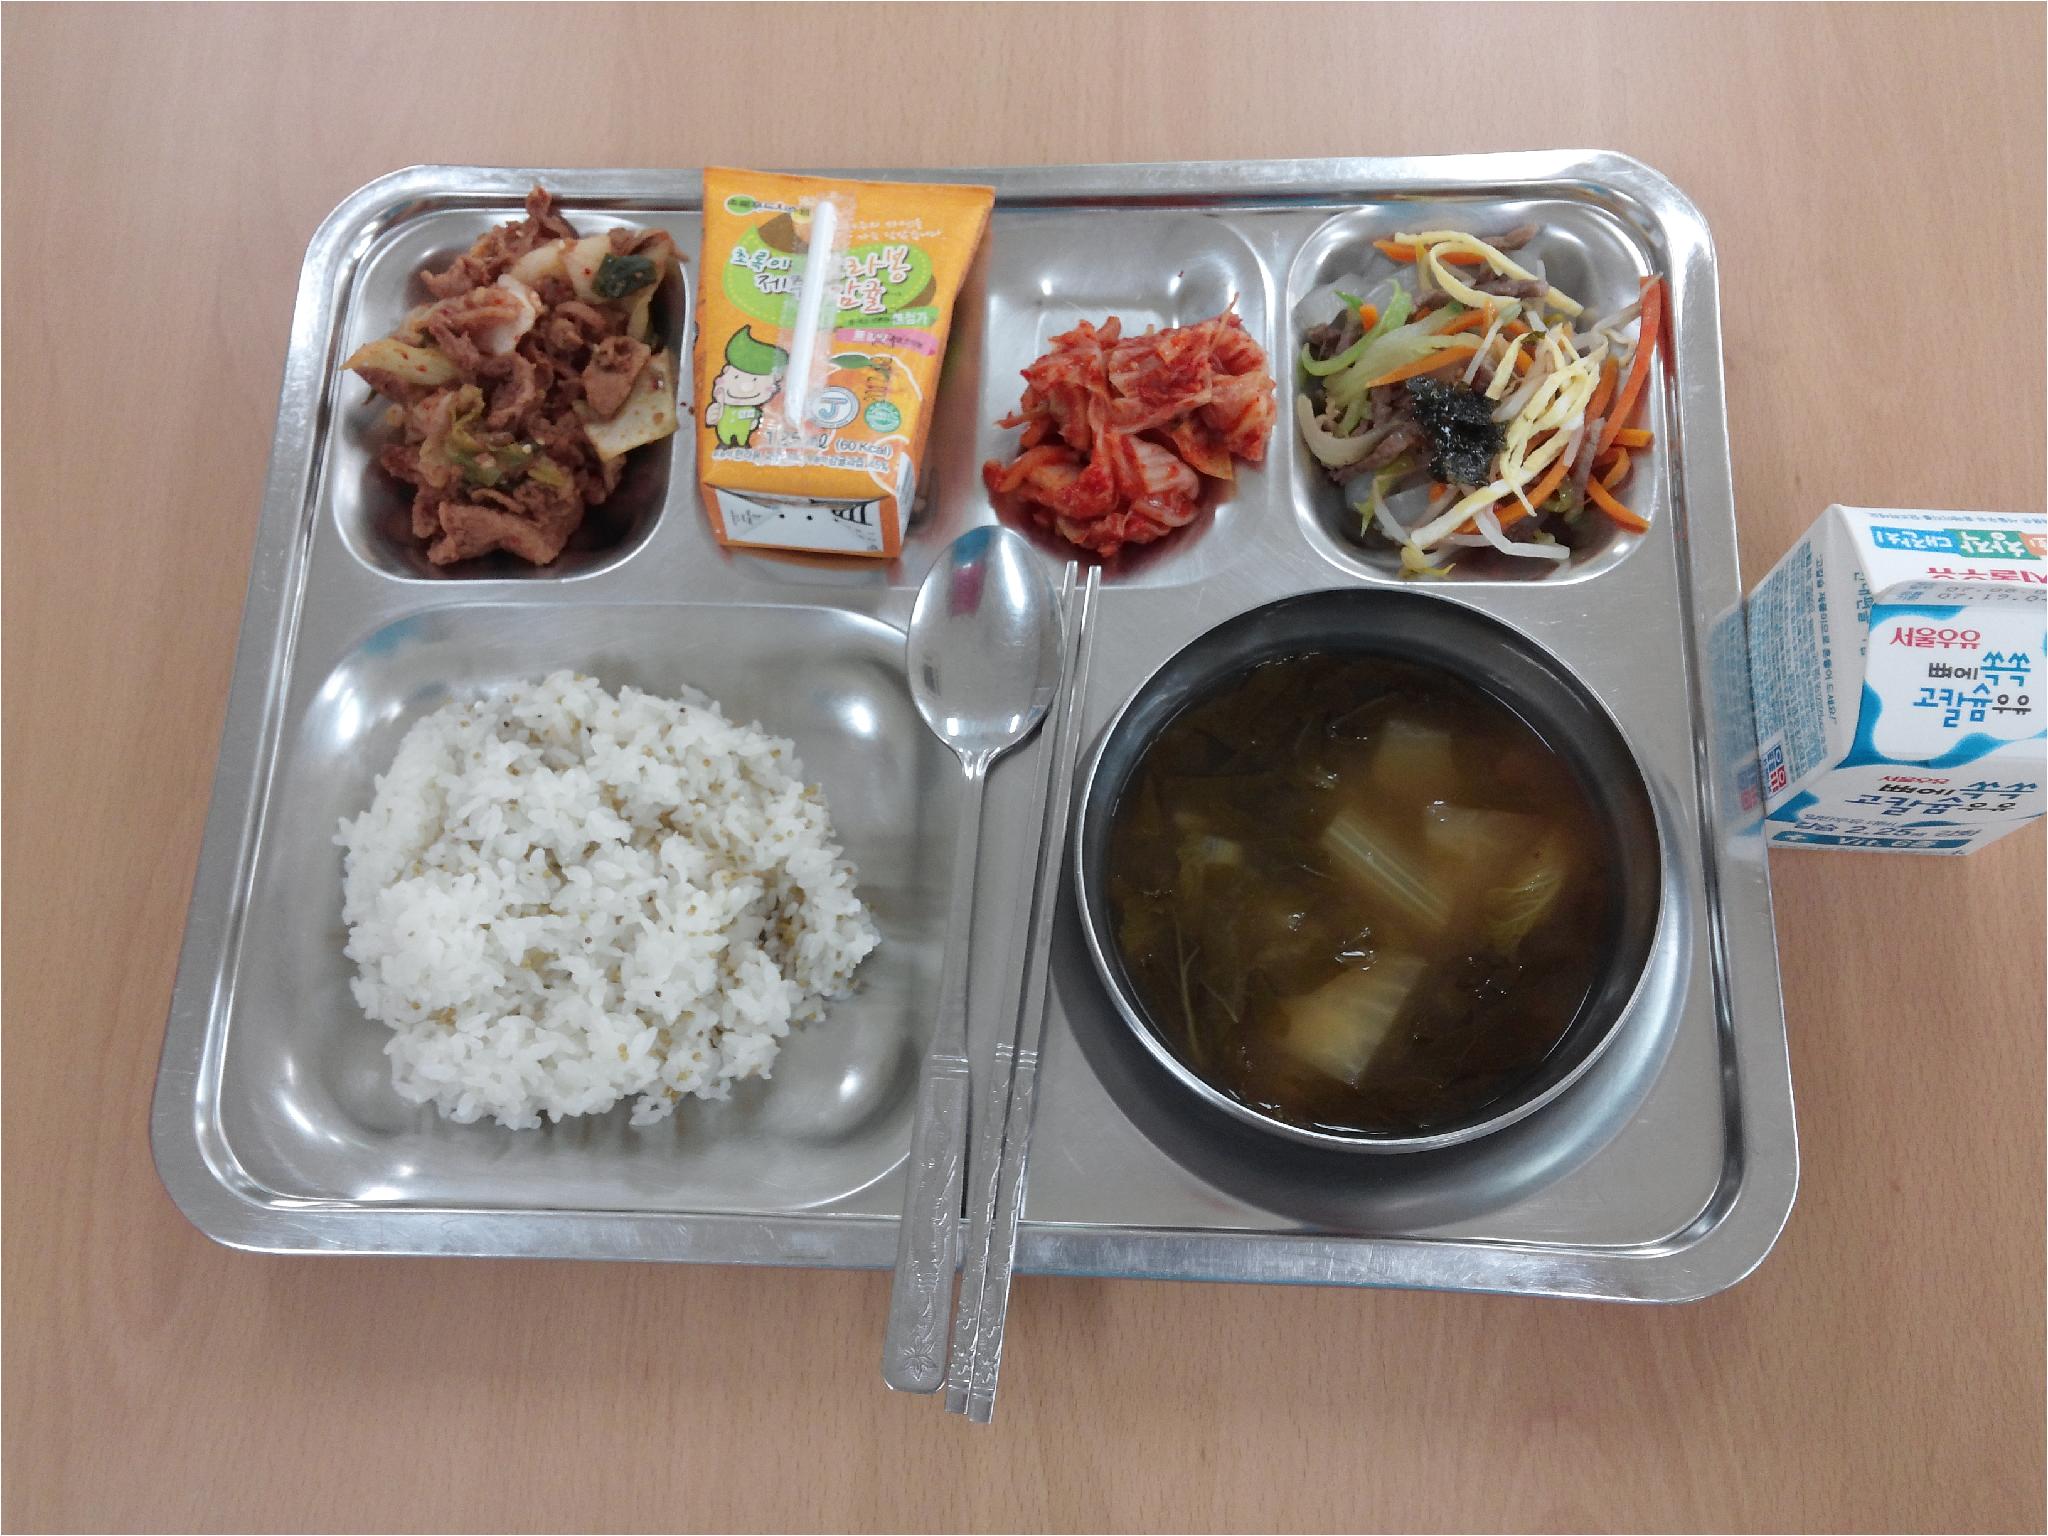 7월 12일 식단 차조밥 애배추된장국 탕평채  돈육사과소스볶음 김치 한라봉쥬스 우유 